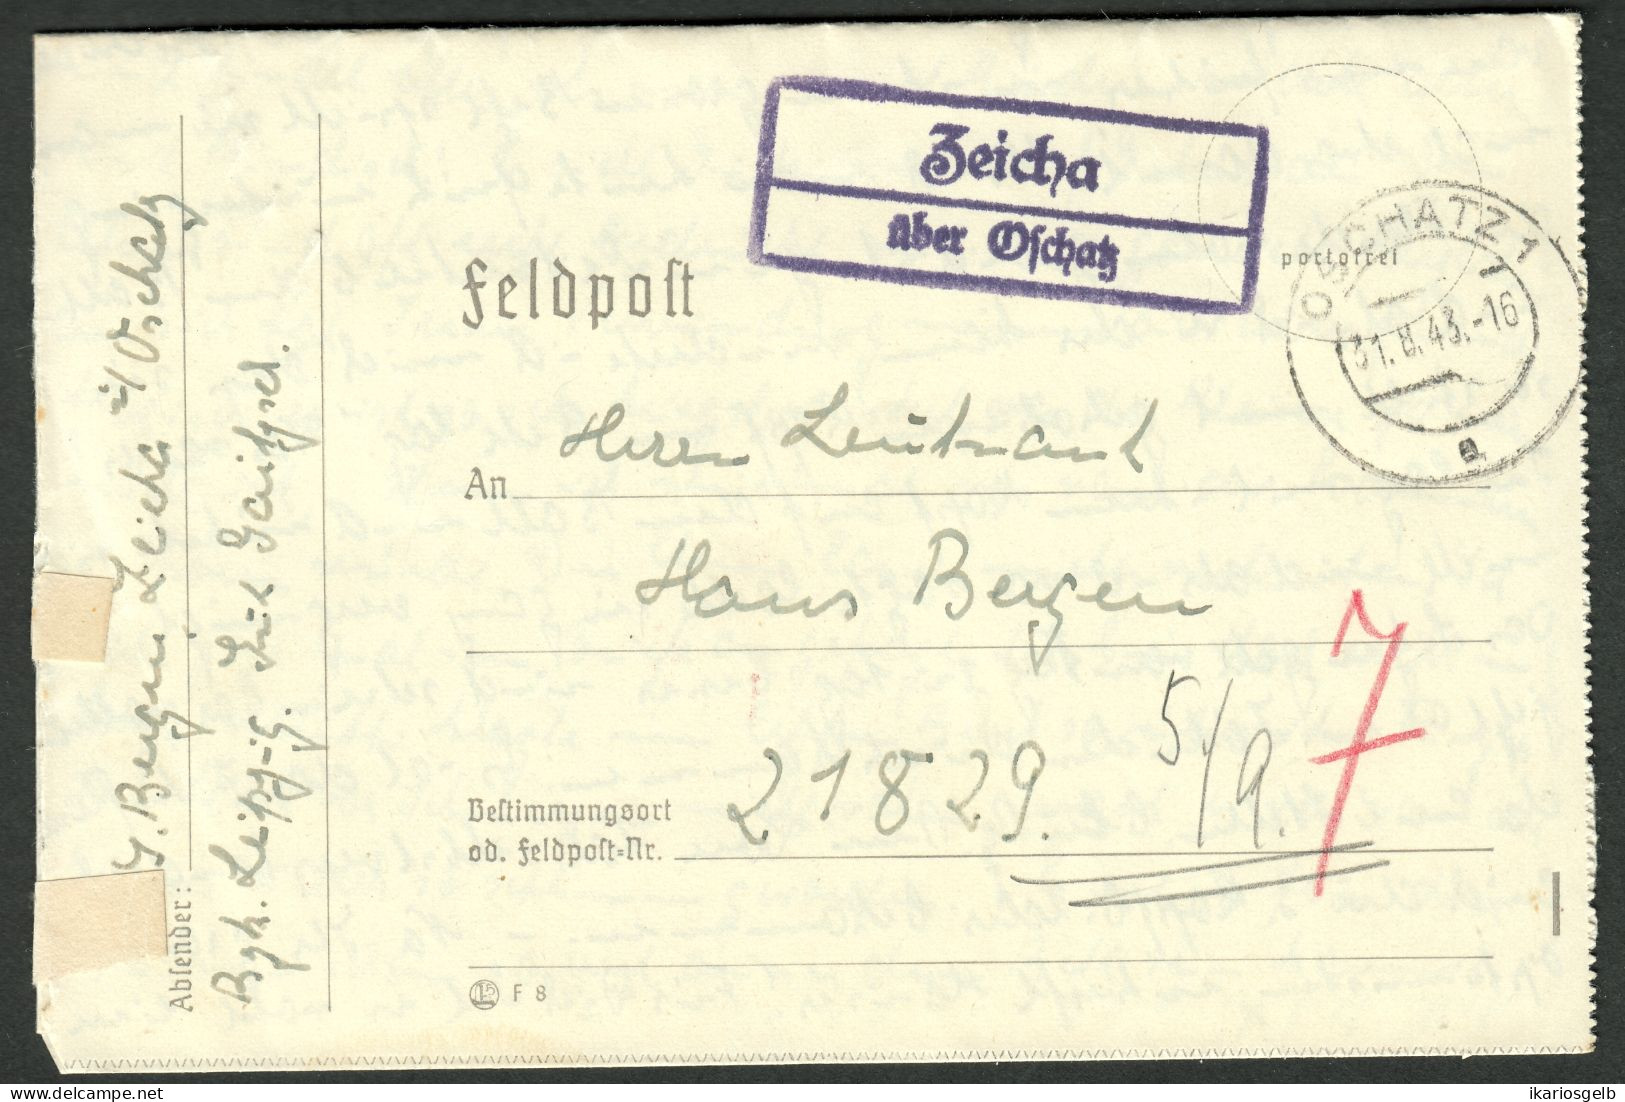 ZEICHA über OSCHATZ 1944 Sauberer LANDPOSTSTEMPEL Blau Auf FELDPOST Bedarfsbrief > FP-# 21829 - Feldpost 2. Weltkrieg